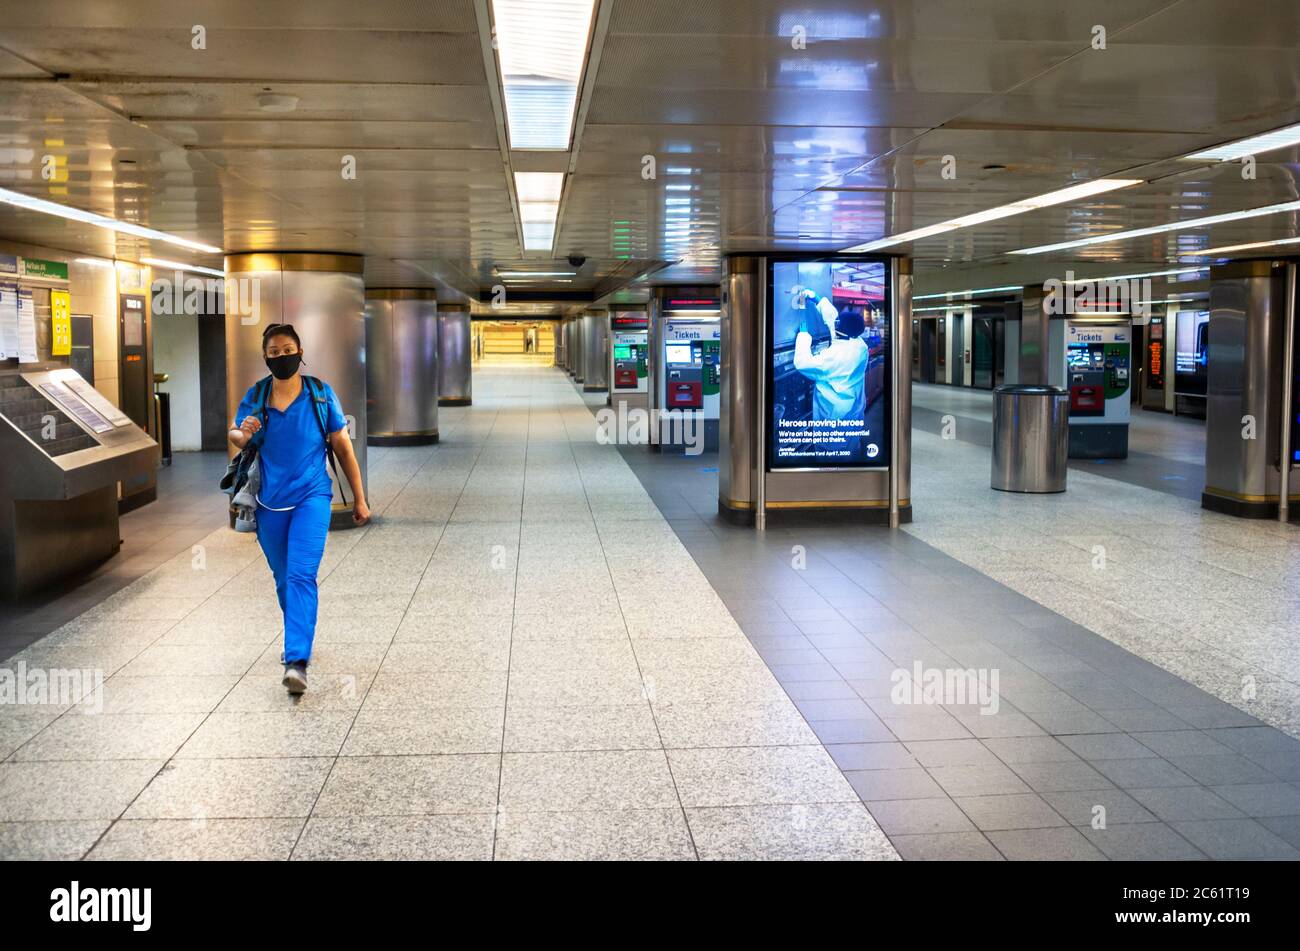 Eine einstündige weibliche Gesundheitsarbeiterin, die normalerweise Rush Hour ist, in Pennsylvania Station, auf dem Weg zur Arbeit während der covid-19 Pandemie Lockdown in NYC. Stockfoto